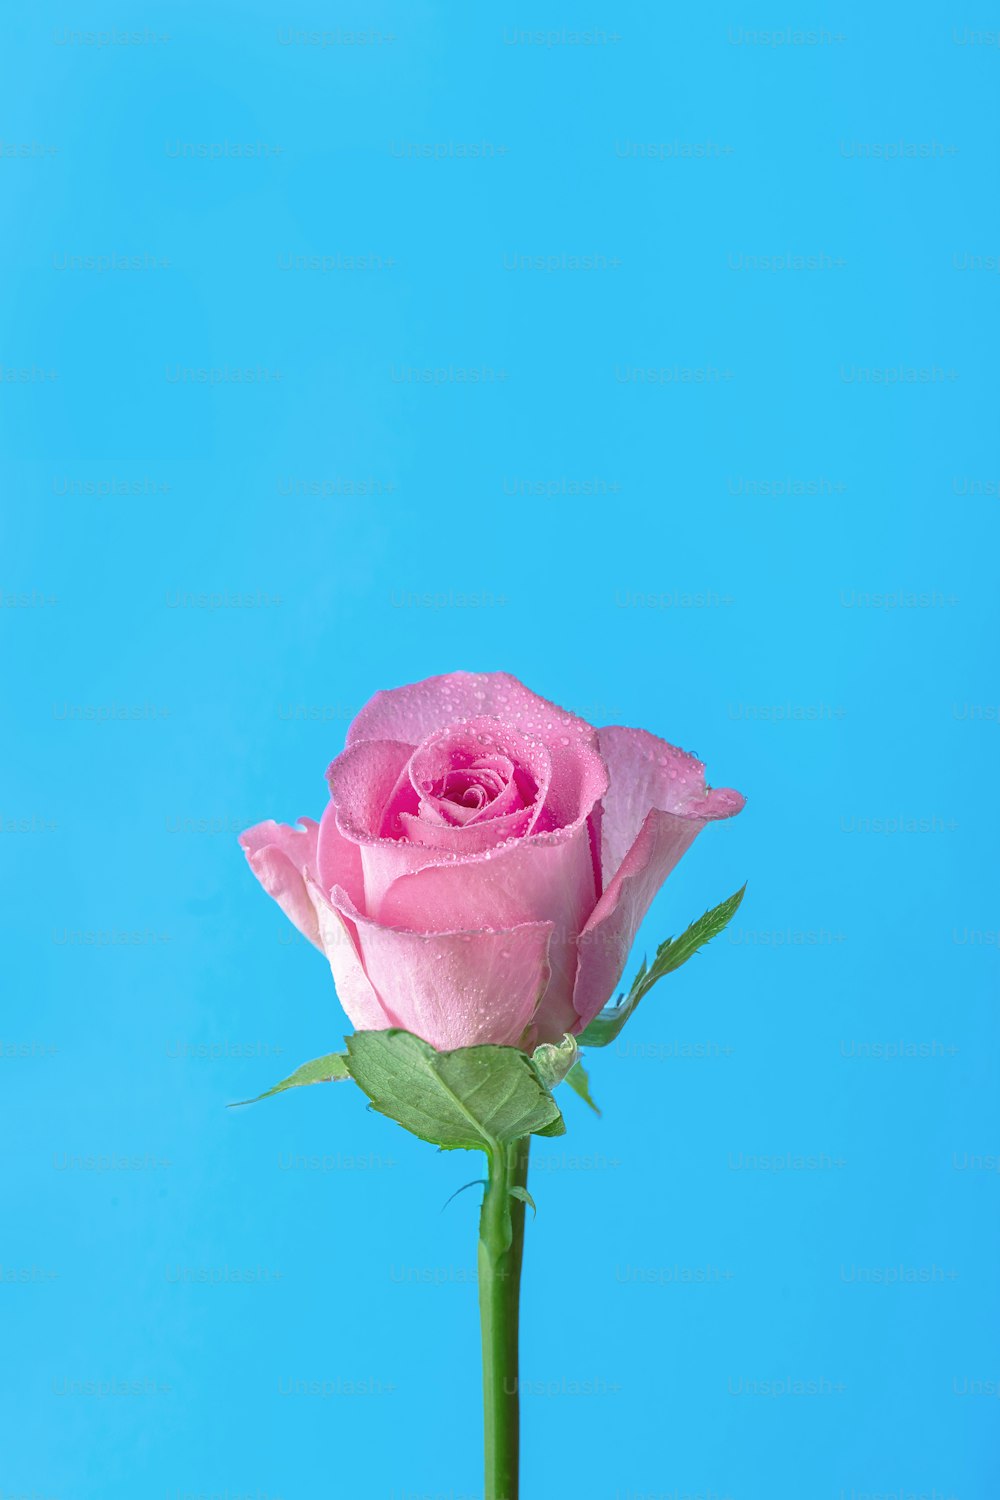 una singola rosa seduta in un vaso